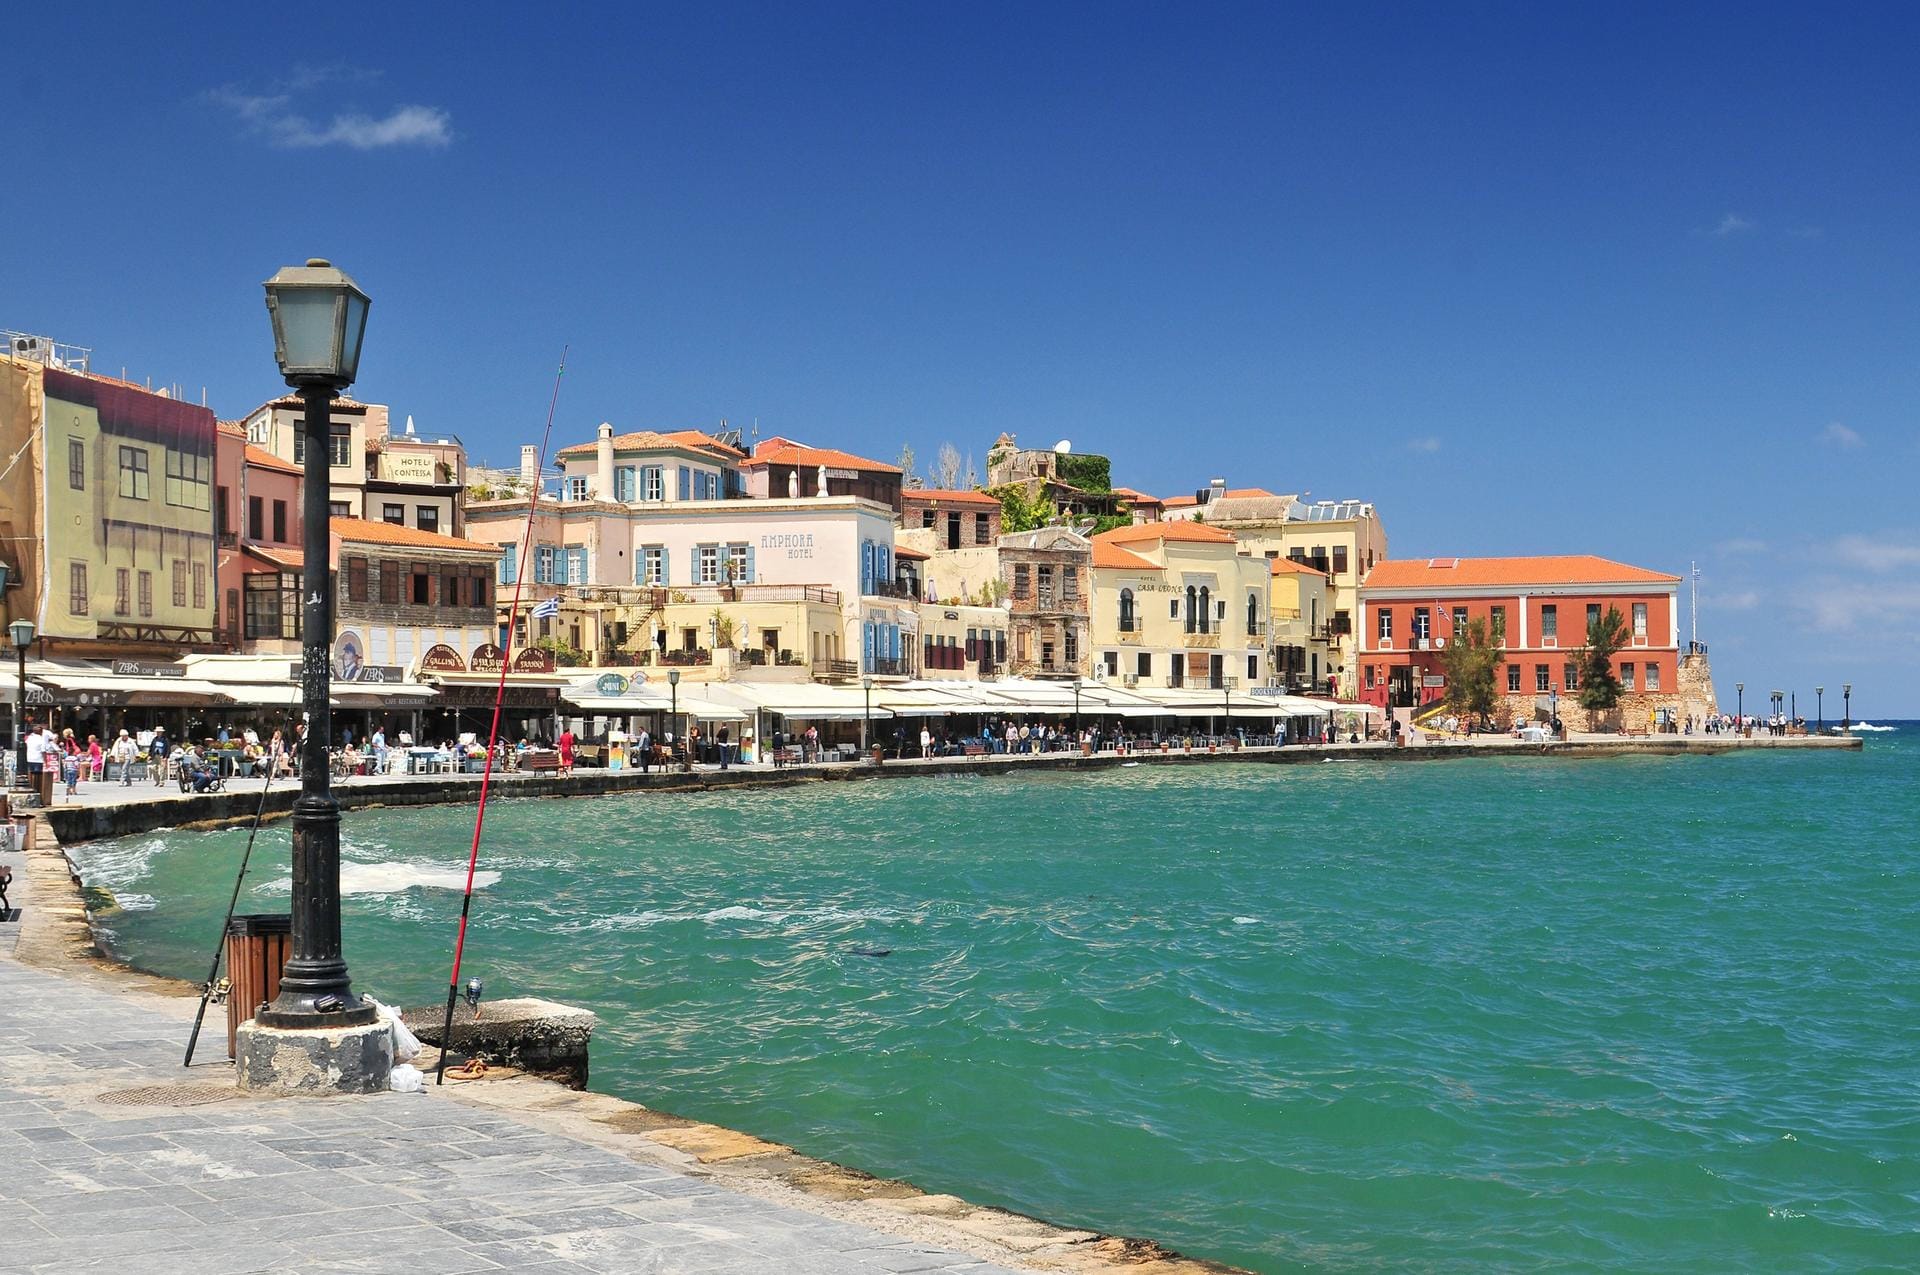 Venezianischer Hafen in Chania: Beim Spaziergang durch die engen Gassen finden Sie viele Cafés, Restaurants und Souvenirshops.